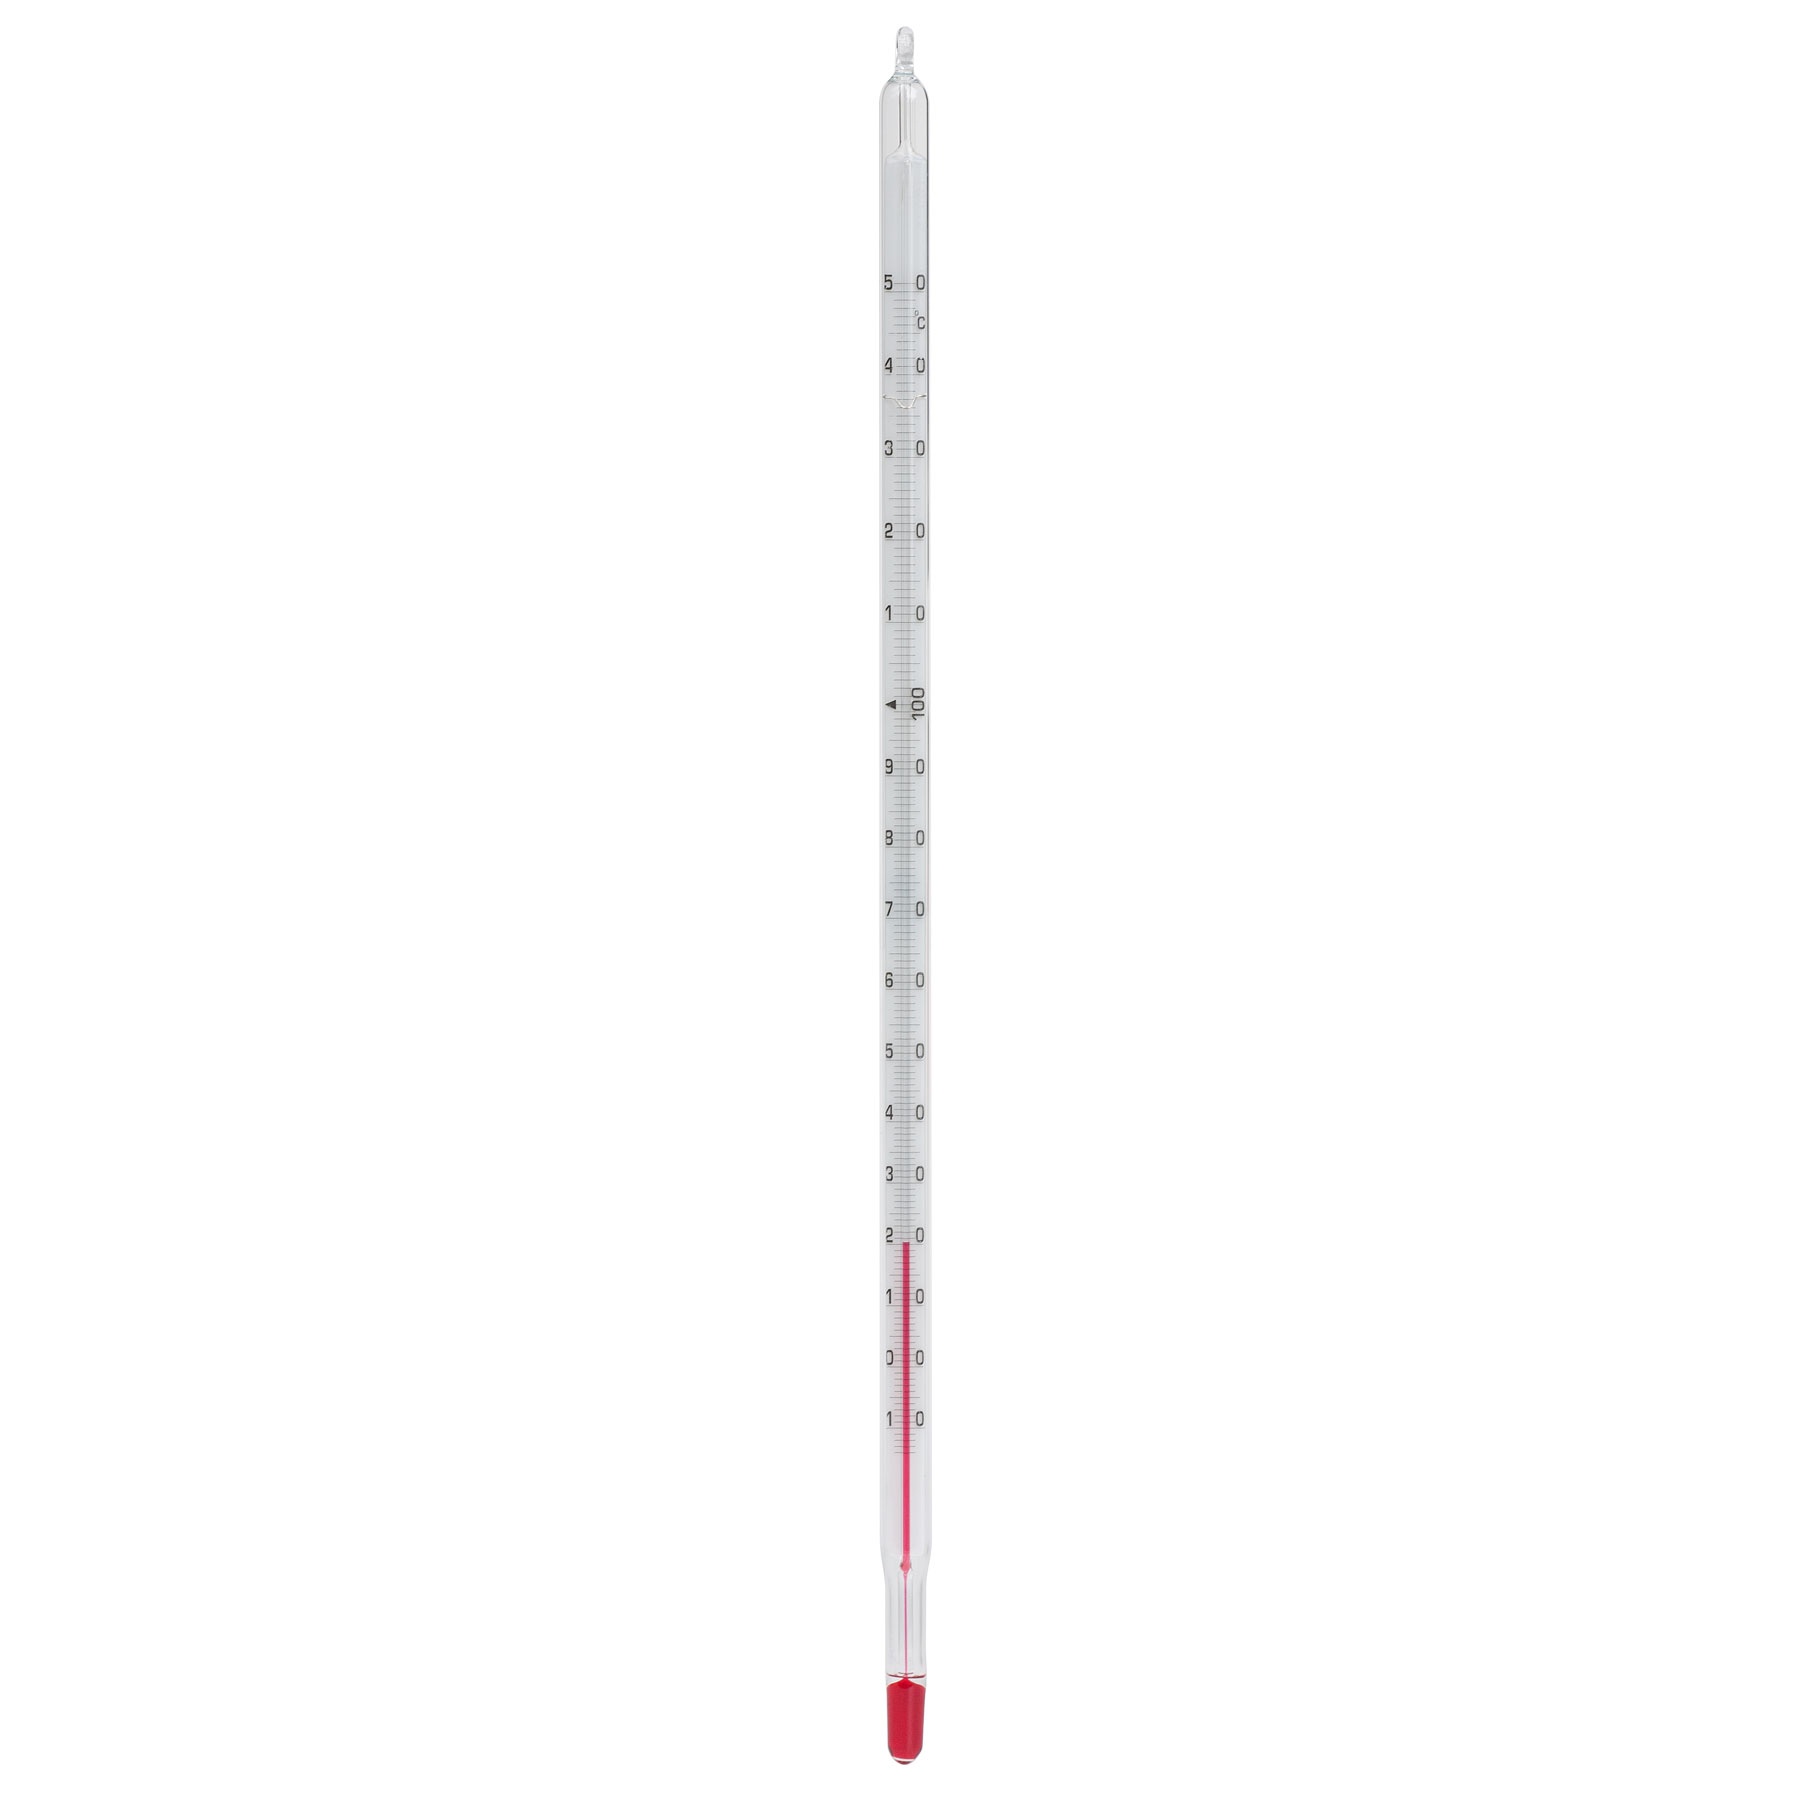 https://profilab24.com/bilder/produkte/gross/de-labor-messtechnik-ludwig-schneider-thermometer-einschlussform_a22.jpg